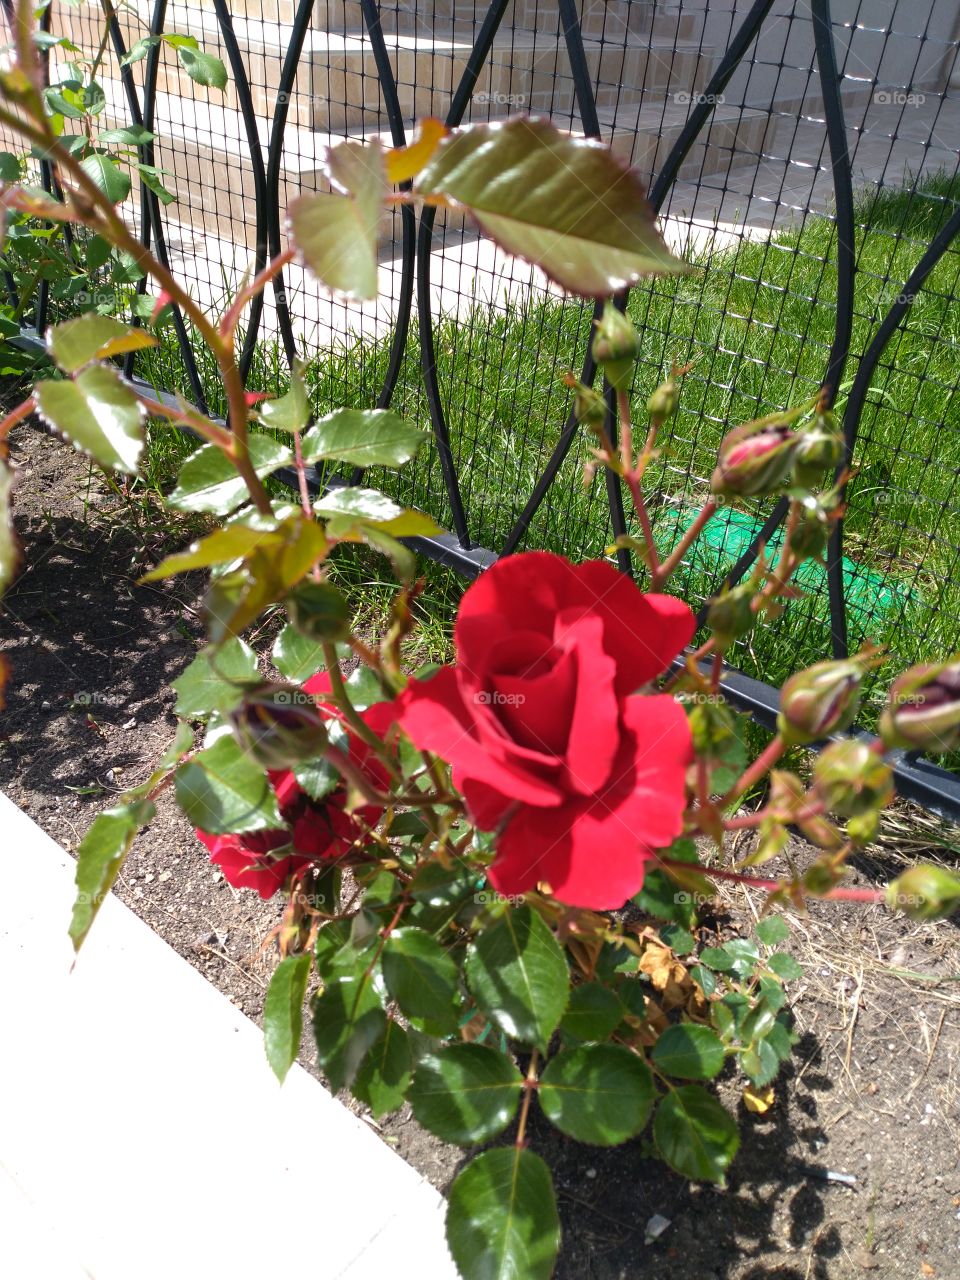 Nice Red rose